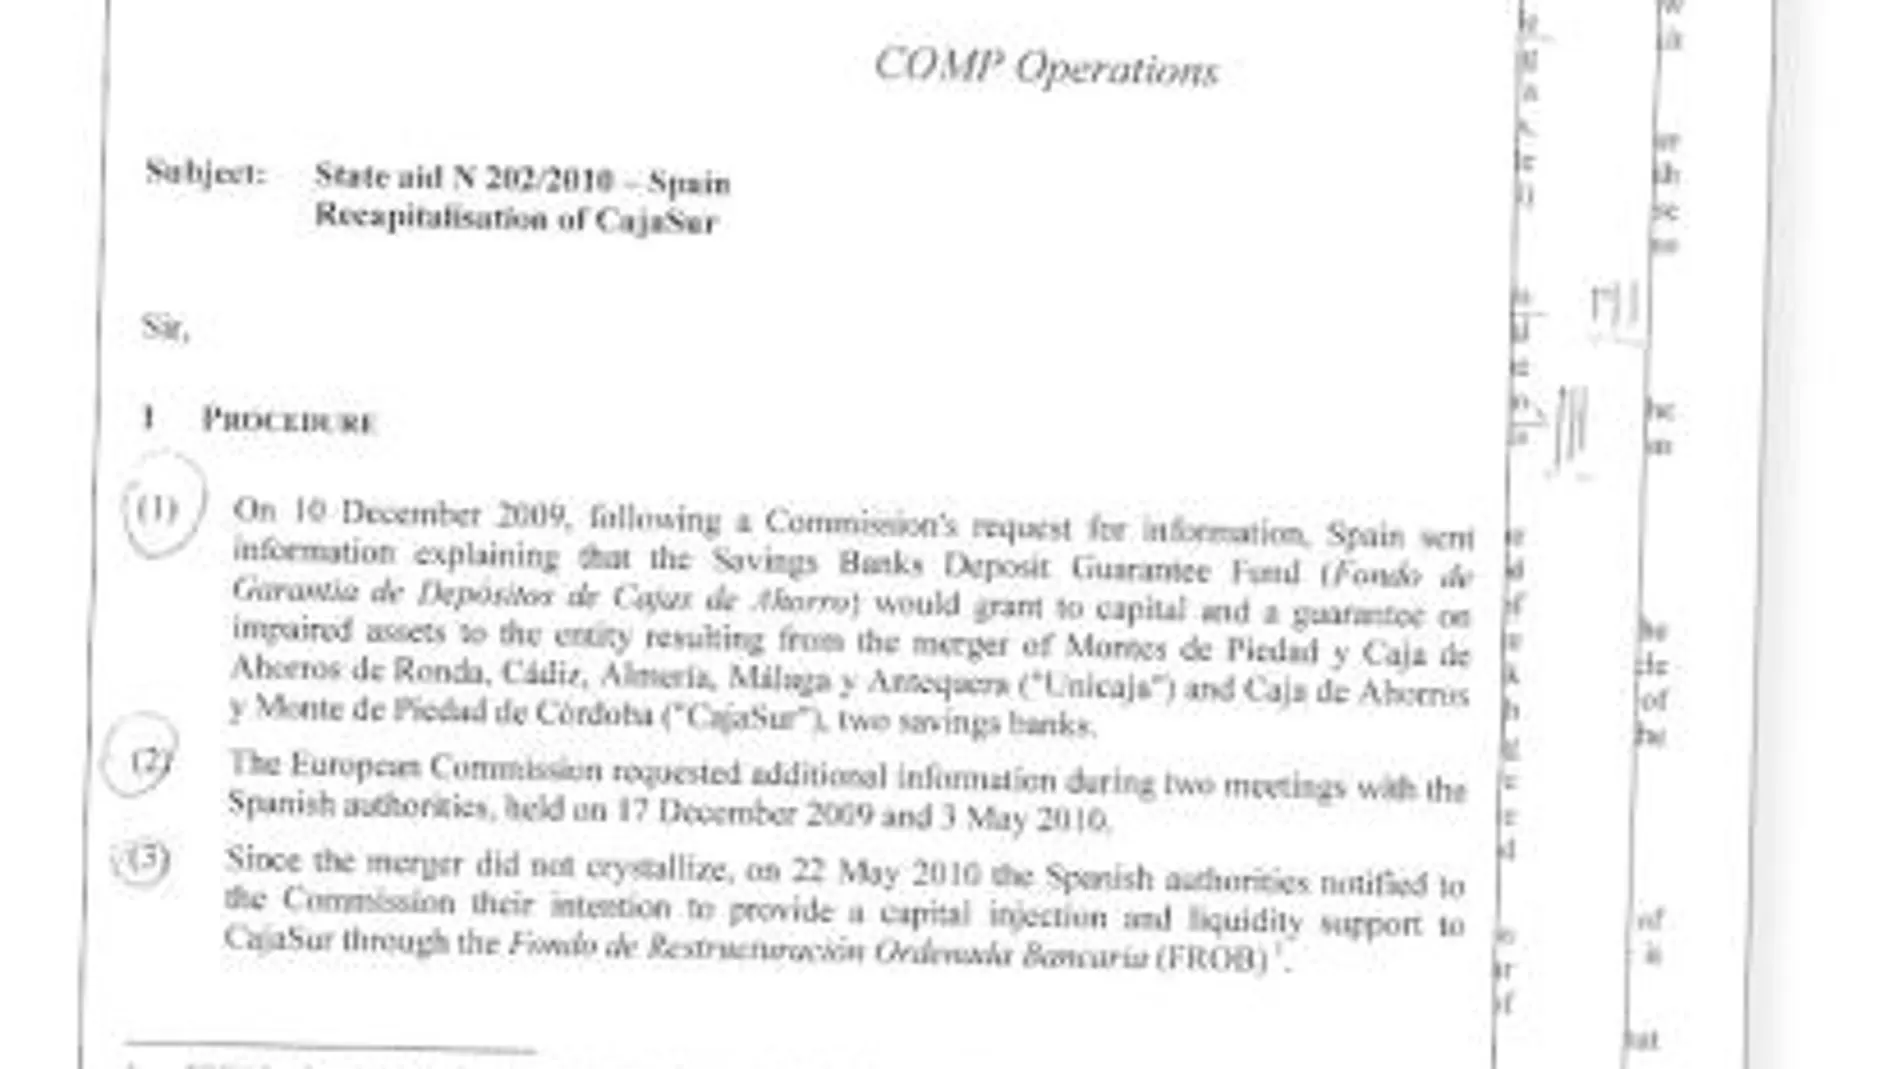 Bruselas respondió al requerimiento de España el 23 de mayo, a través de un documento de 12 folios